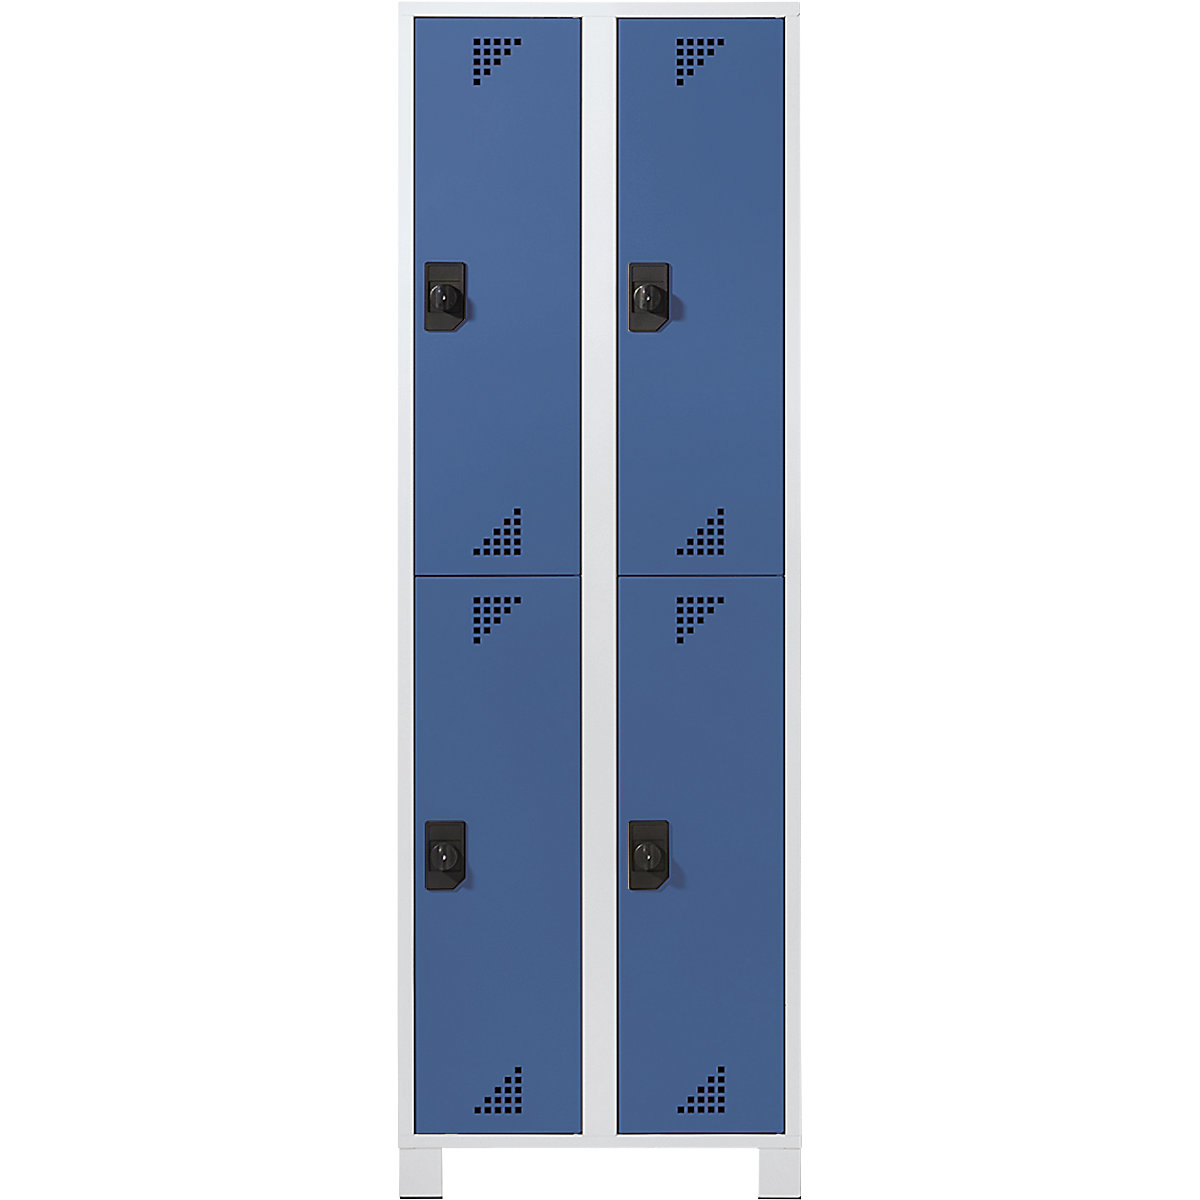 Öltözőszekrény félmagasságú rekeszekkel – eurokraft pro, ma x szé x mé 1800 x 600 x 500 mm, 4 fülke, világosszürke váz, ragyogó kék ajtók-5